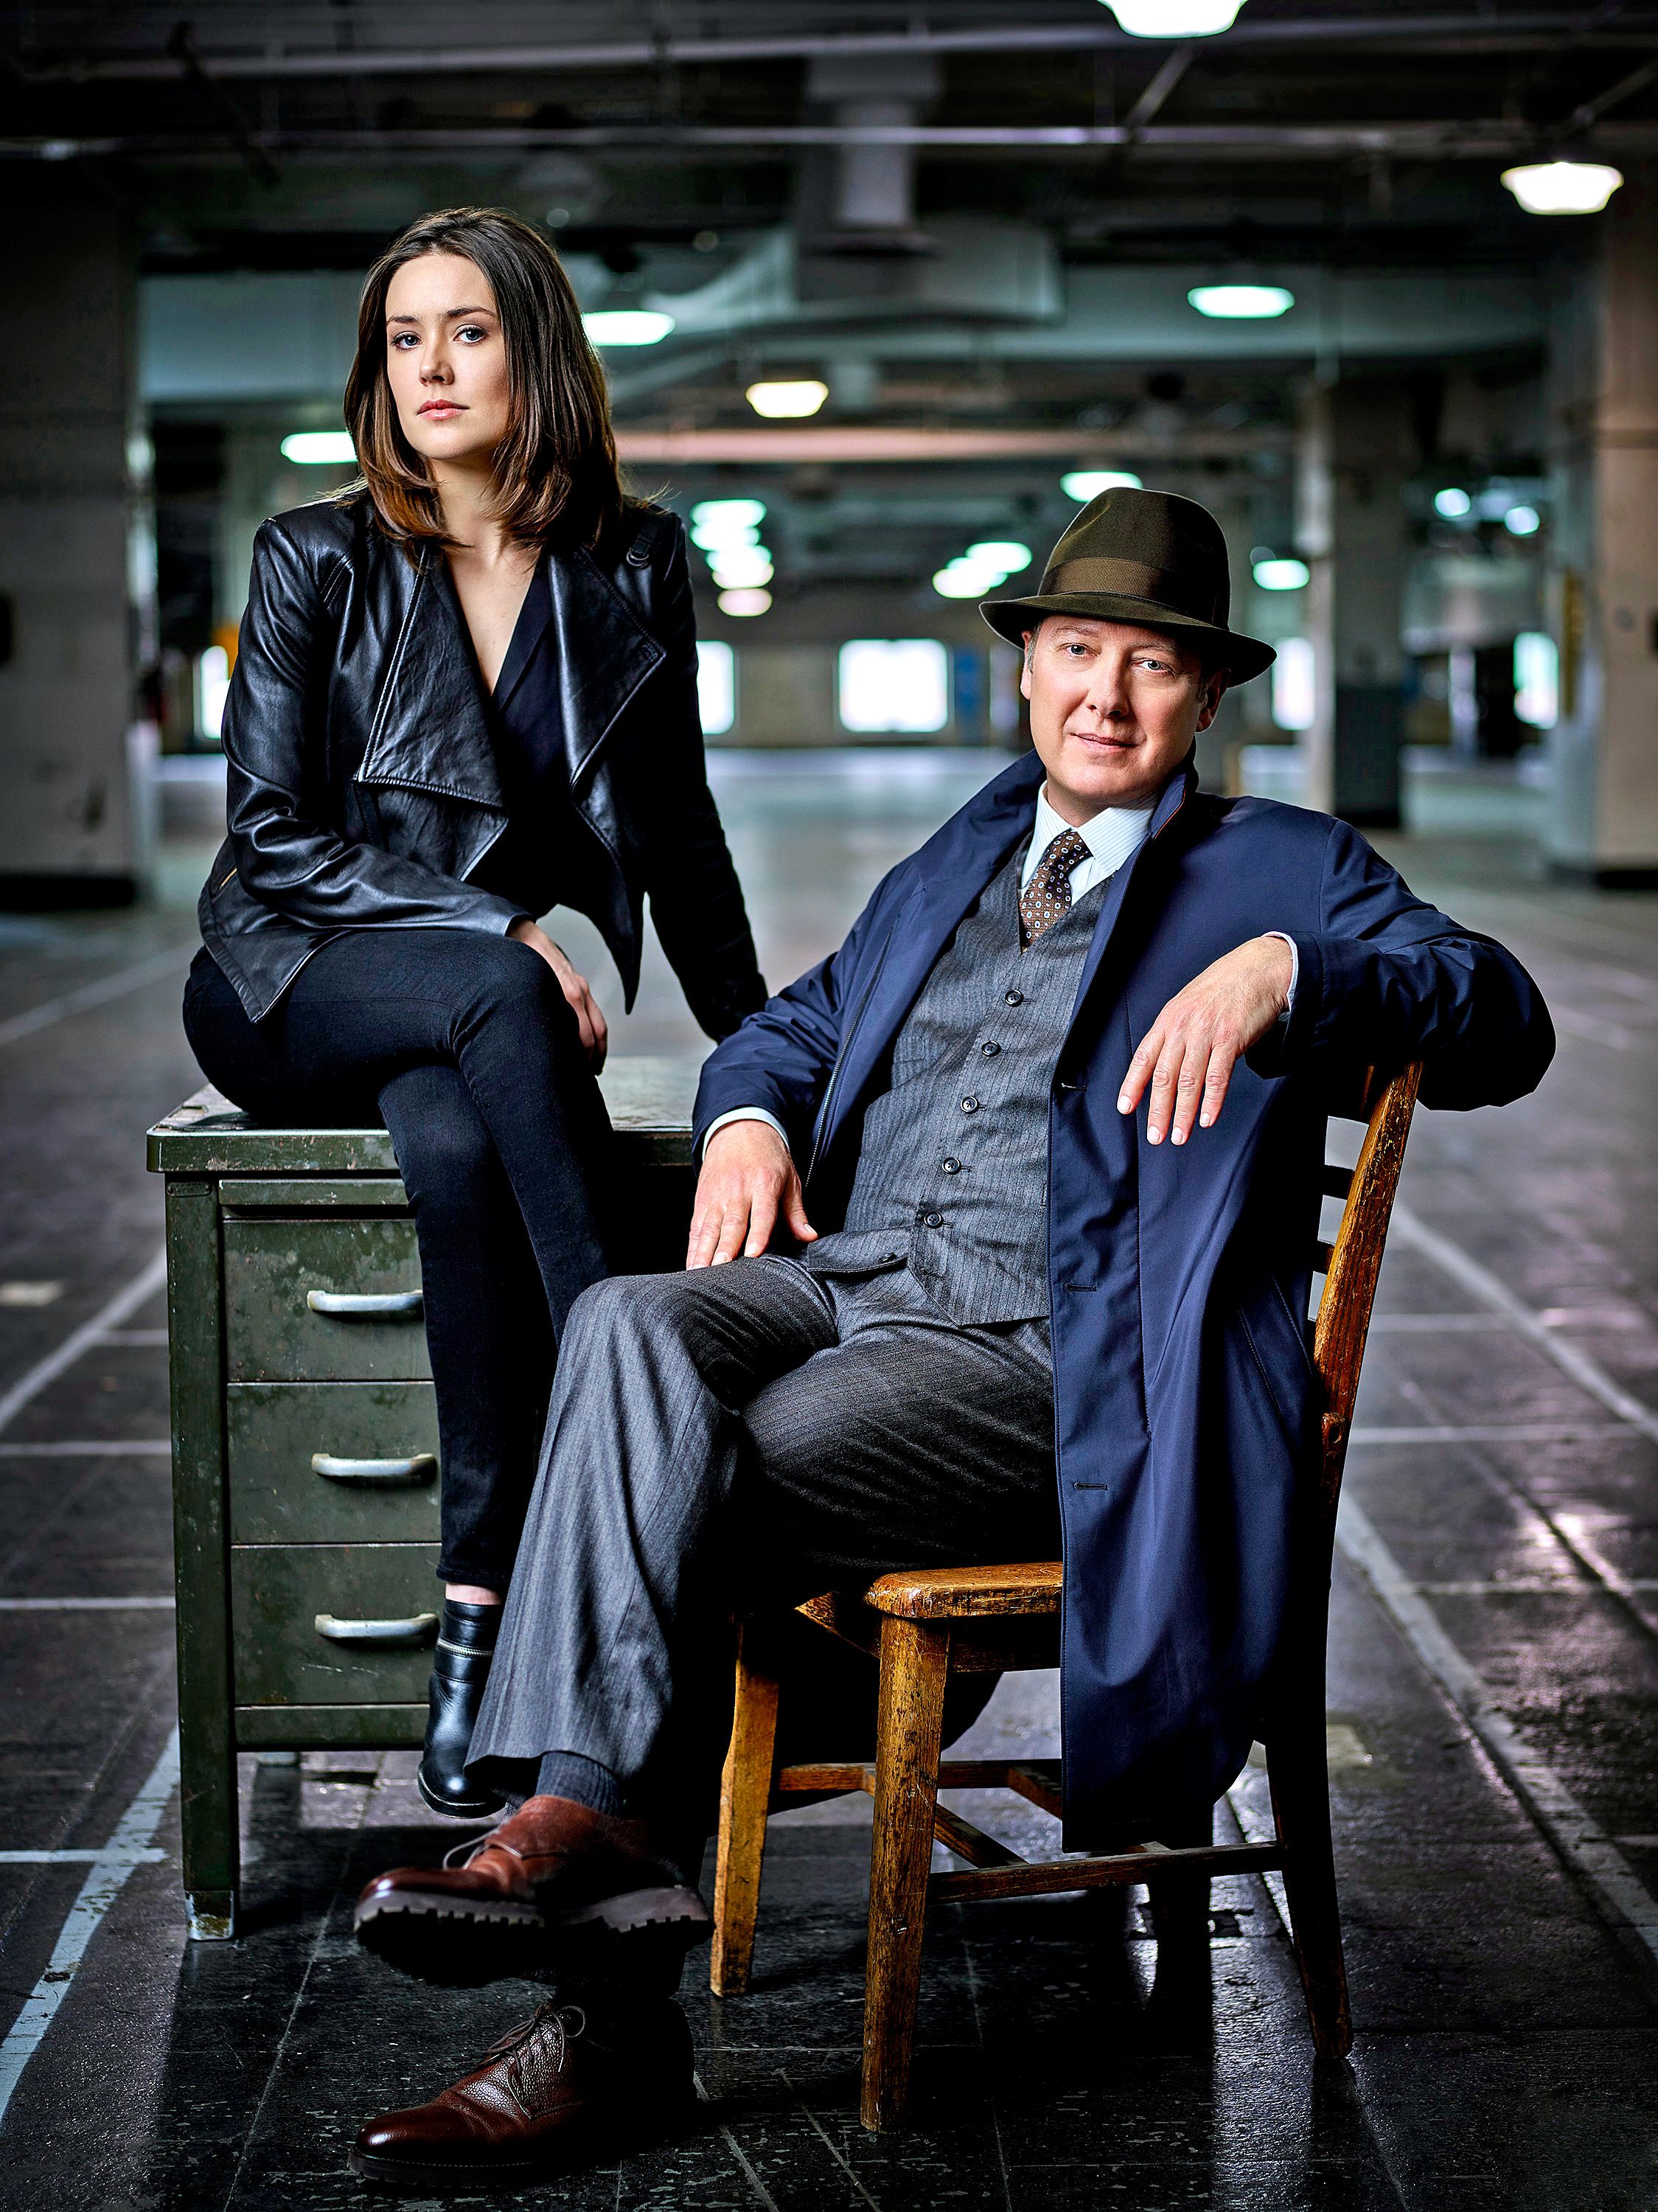 Elizabeth and Reddington posing